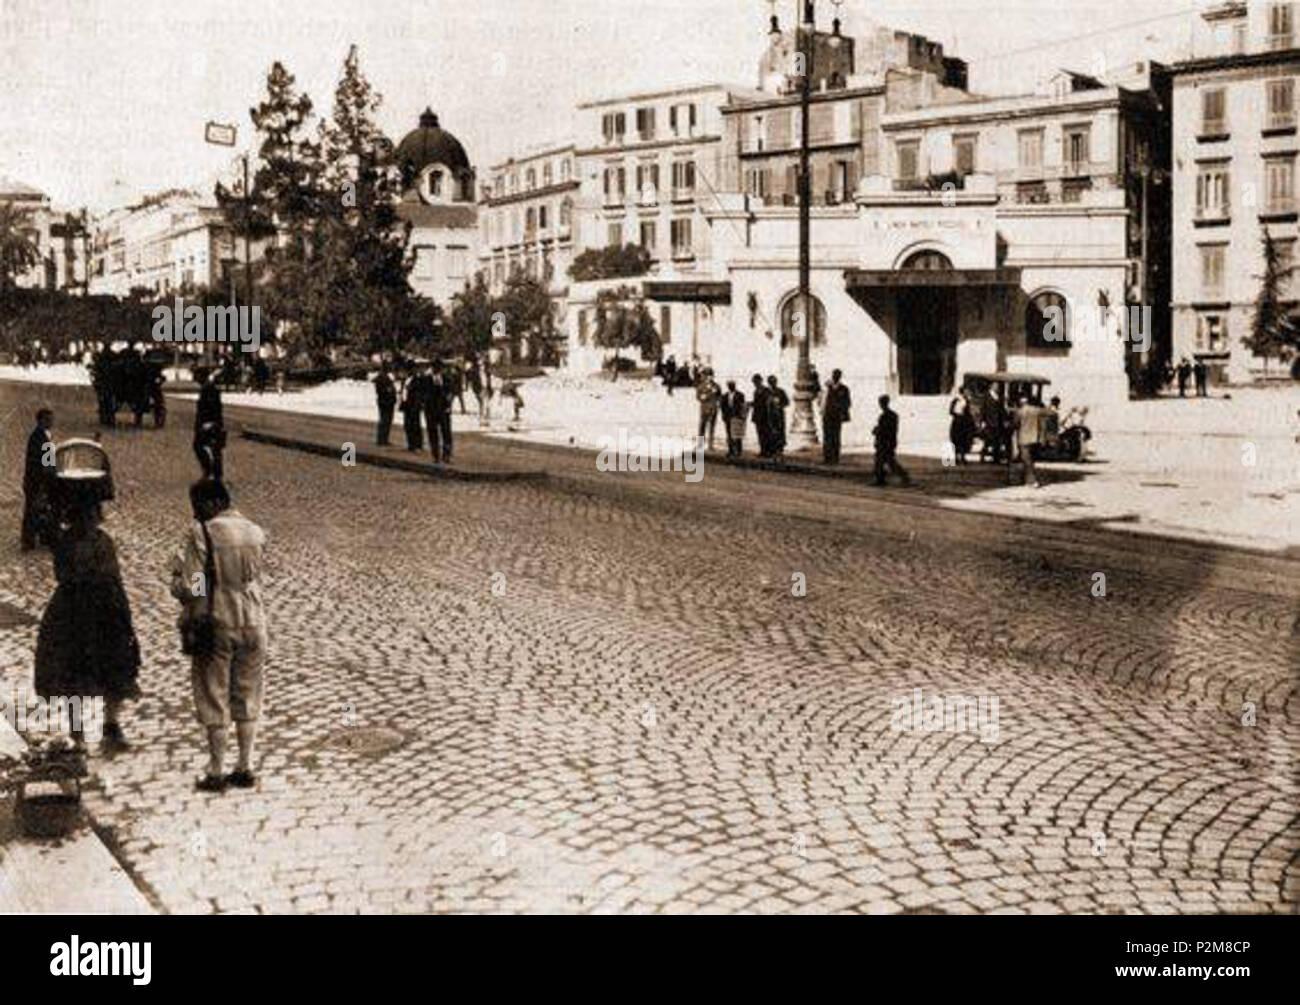 . Napoli, Piazza Cavour con stazione della metropolitana. Autore sconosciuto. half of the 20th century ?. Unknown 61 Napoli, Piazza Cavour 9 Stock Photo